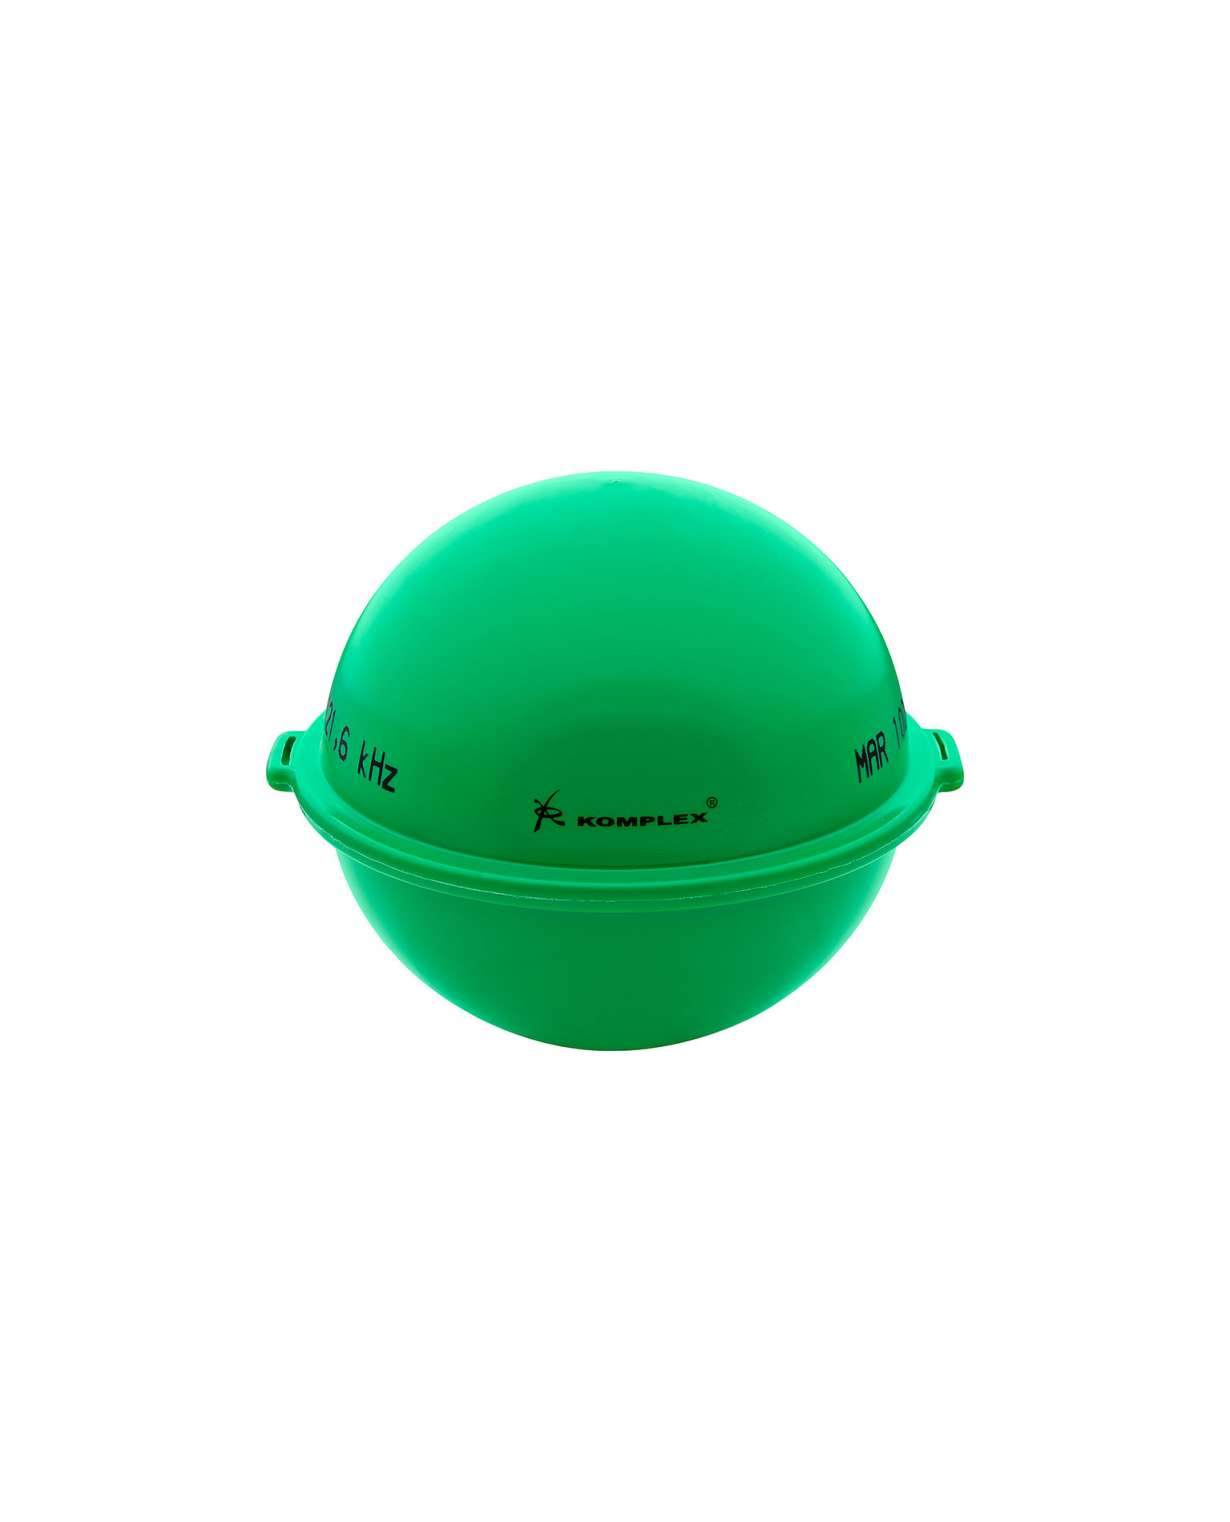 Merkintäpallo Mar 100-3D, Viemäri, vihreä 121,6 kHz